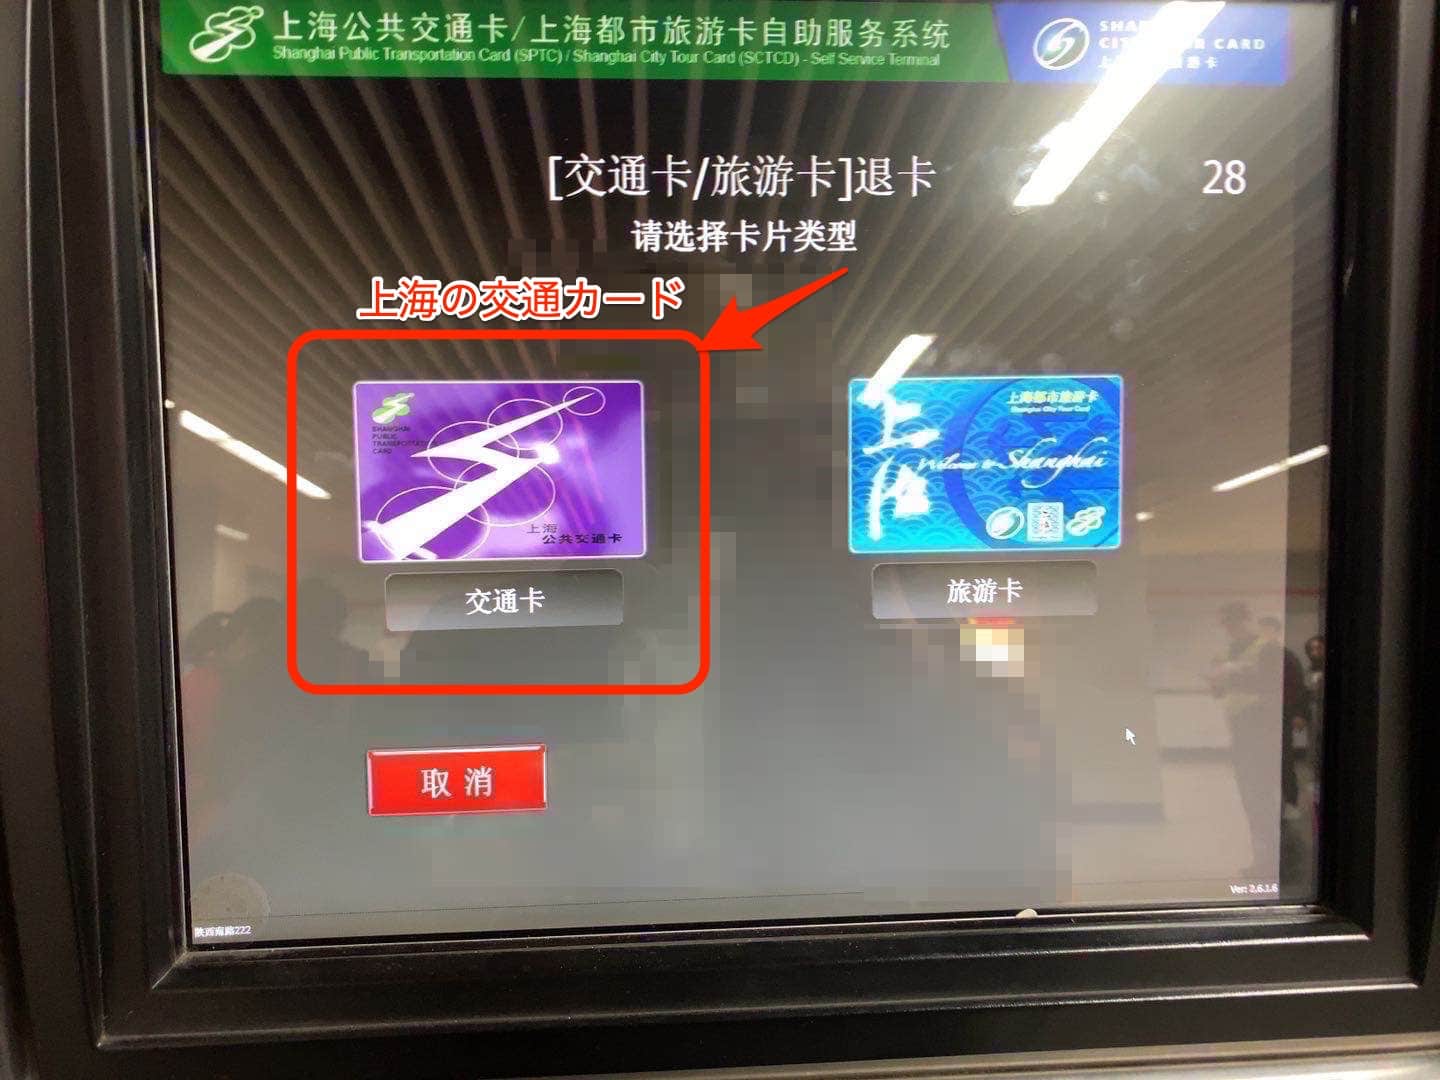 上海の交通カードを退卡する方法